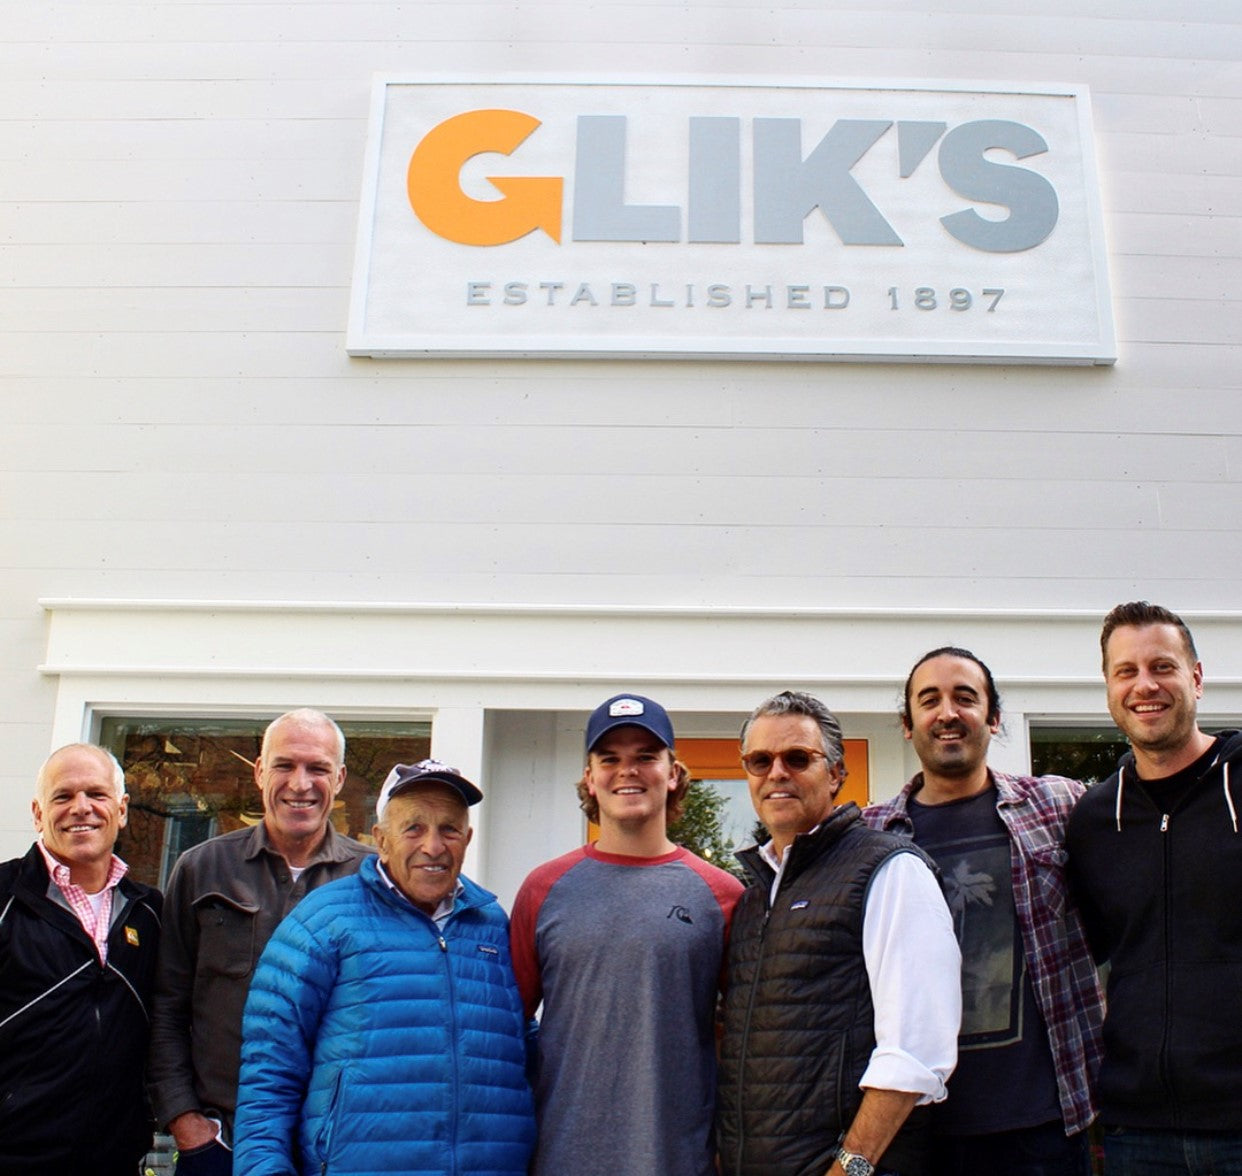 Glik's Family Business